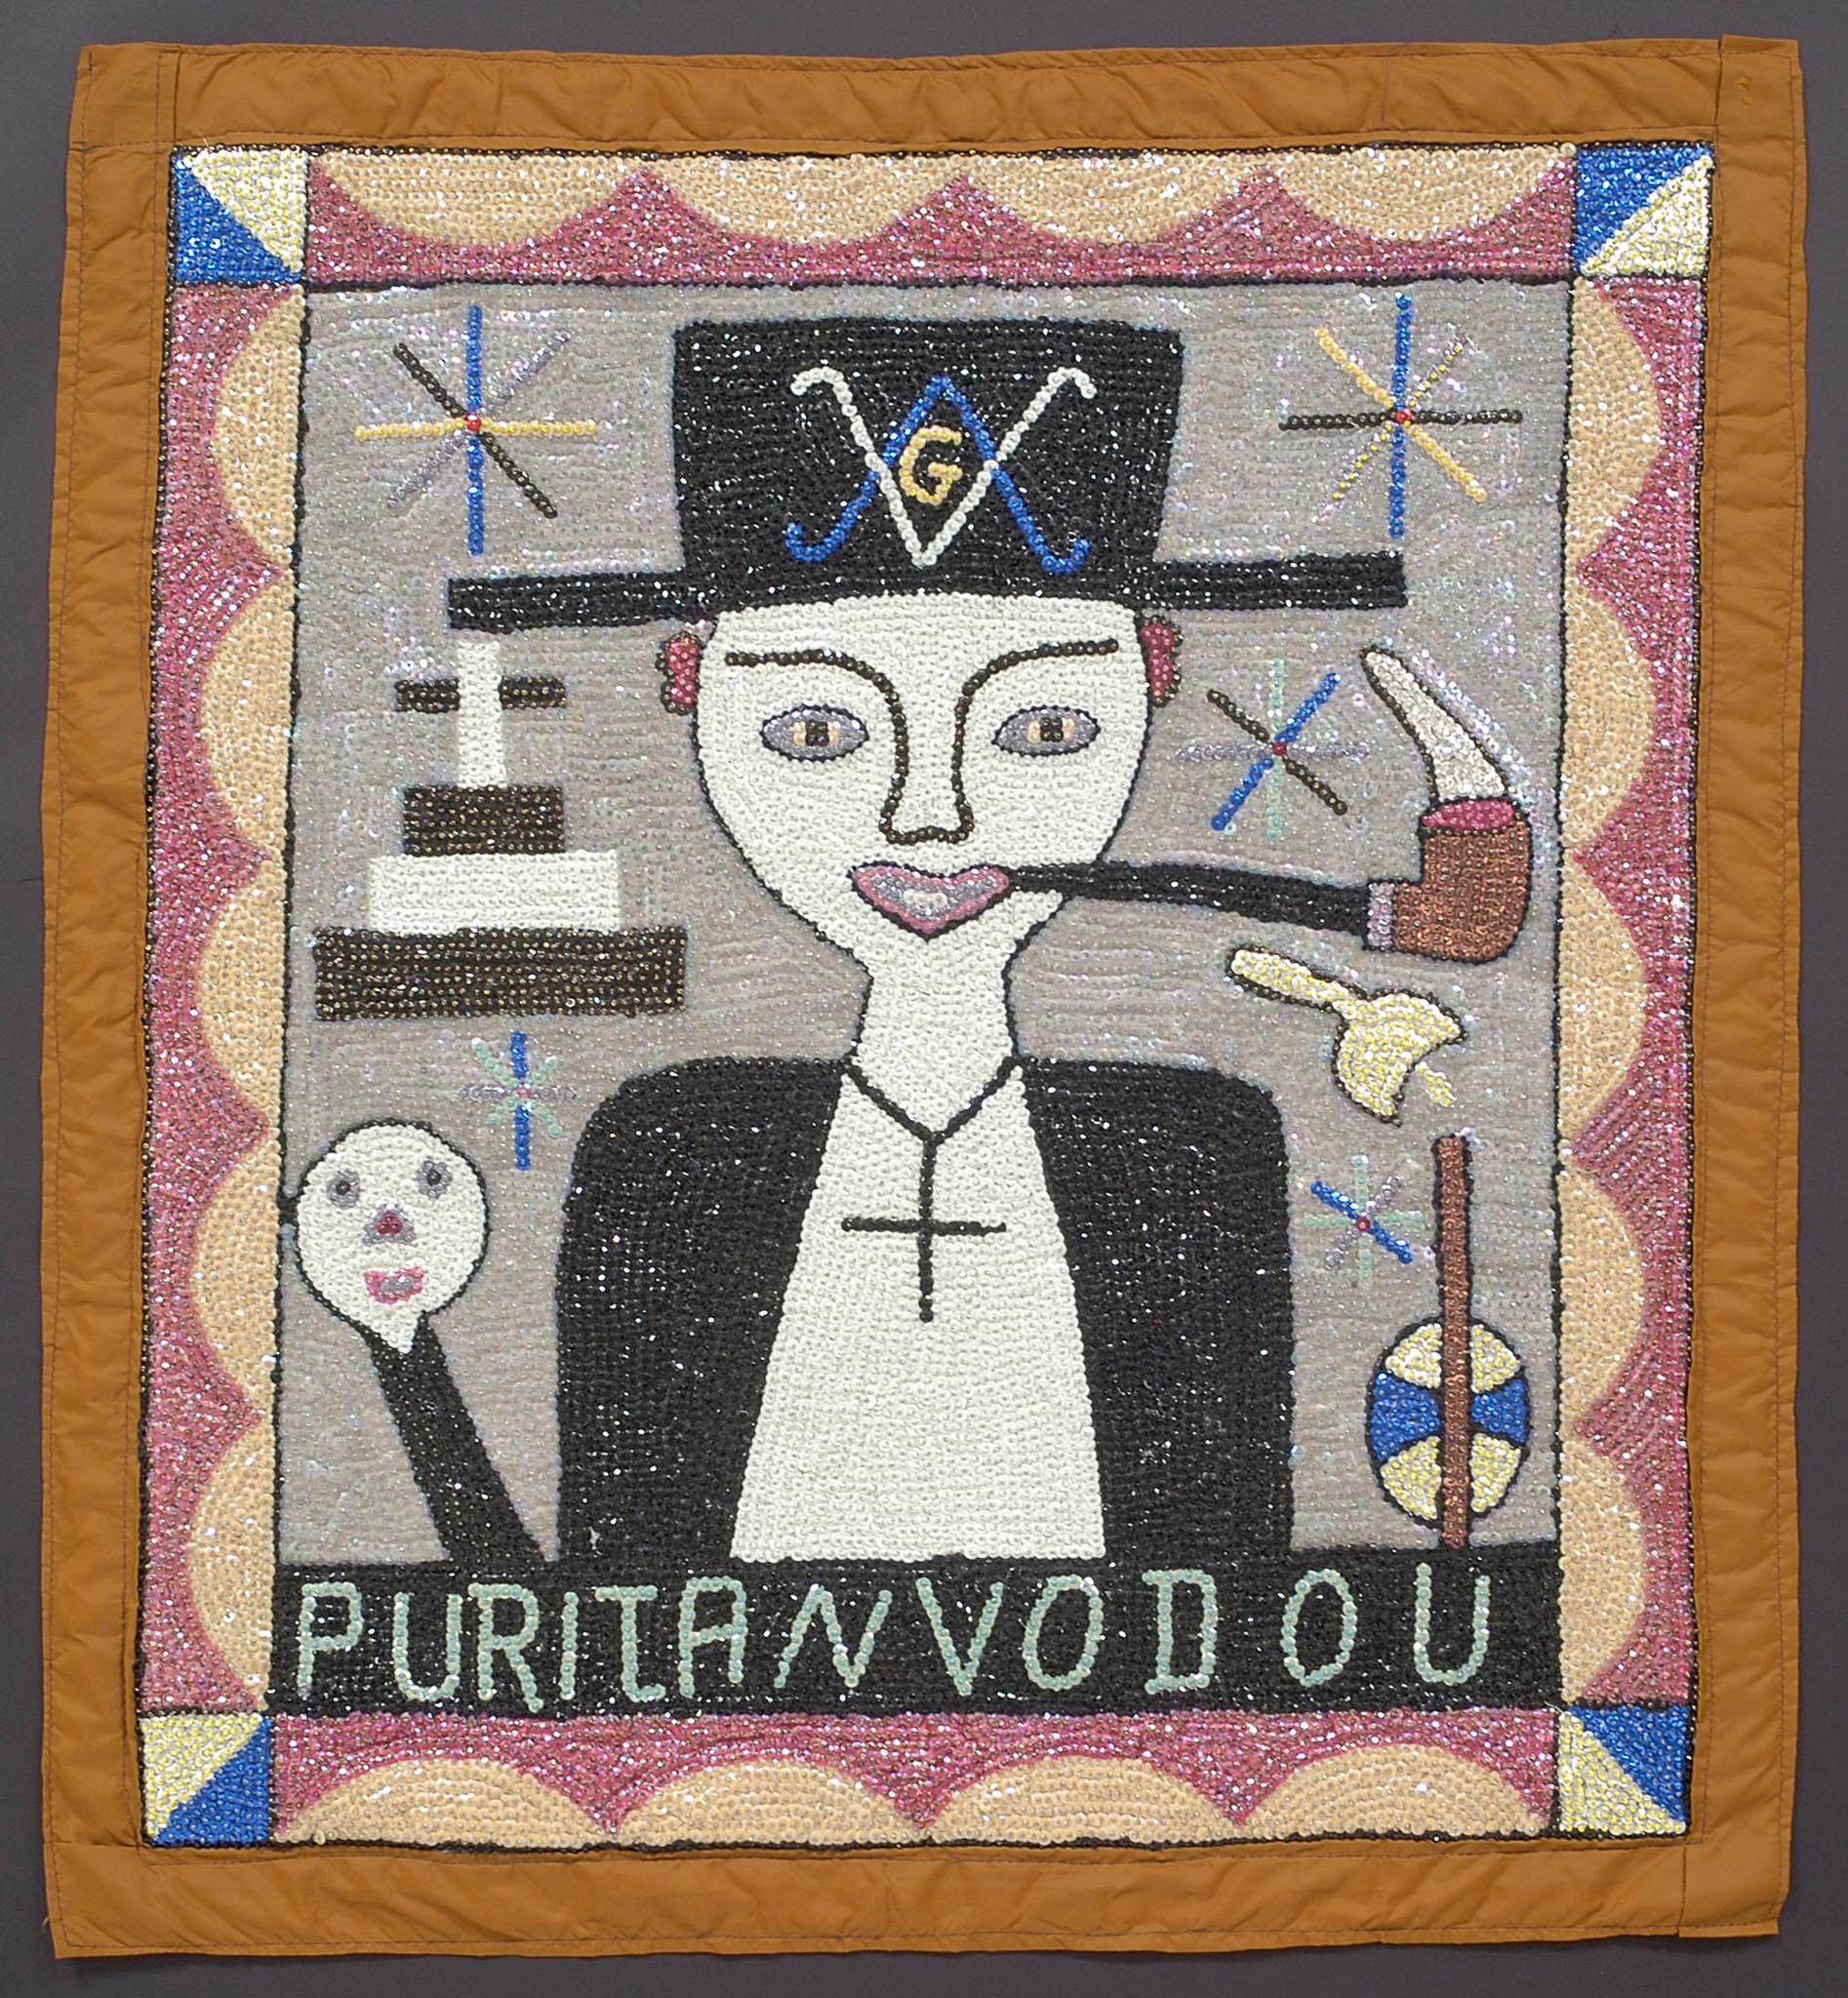 Puritan Vodou, 2000s